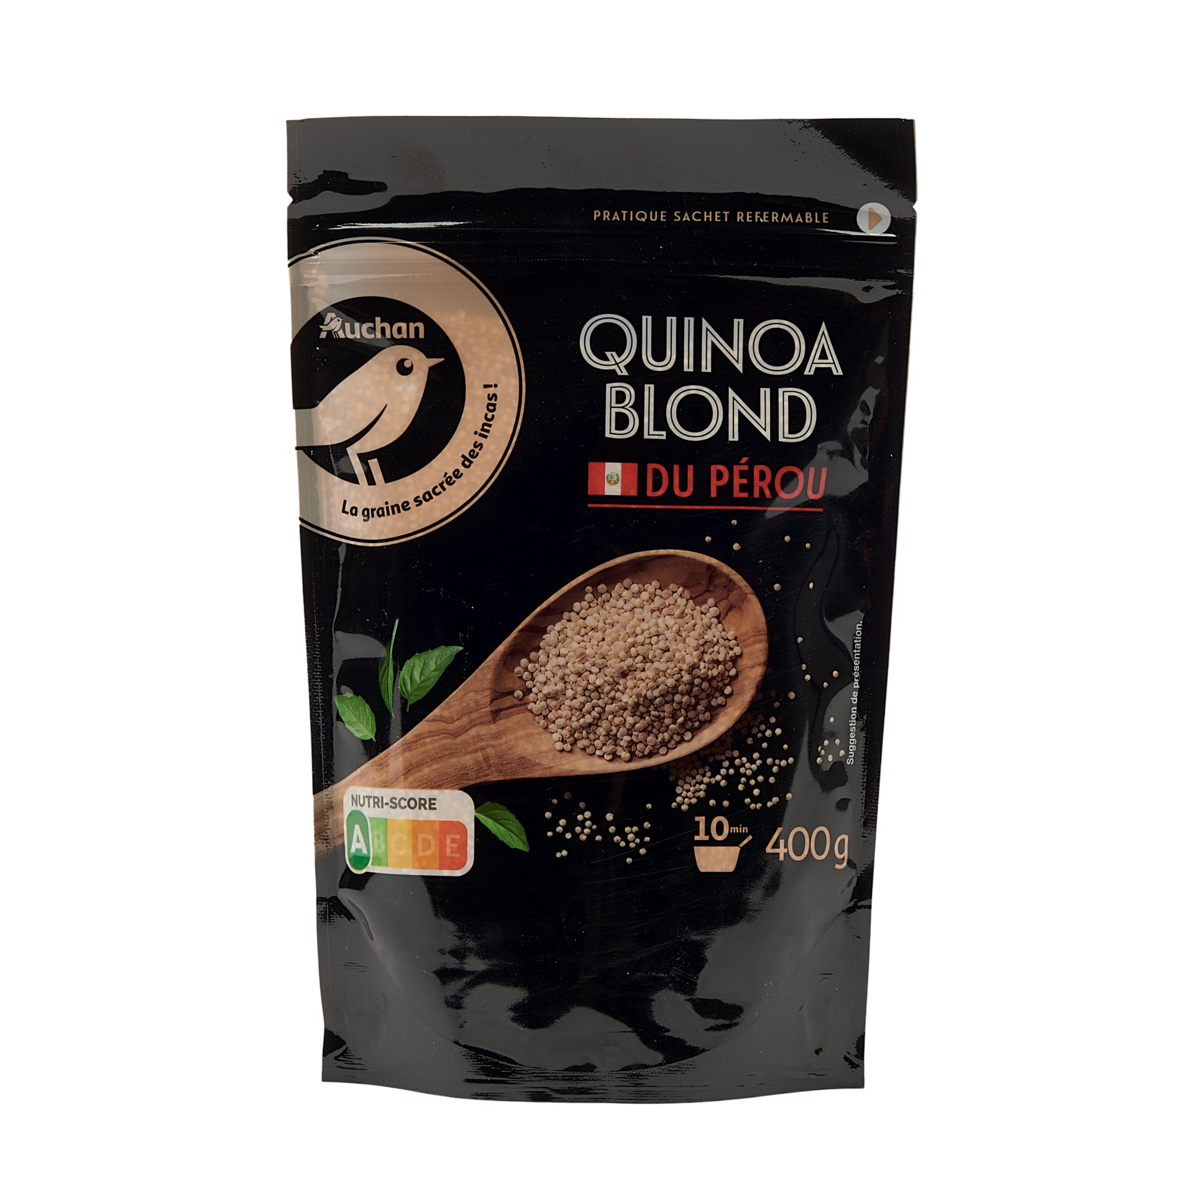 AUCHAN GOURMET Quinoa blond du Pérou sachet express 400g